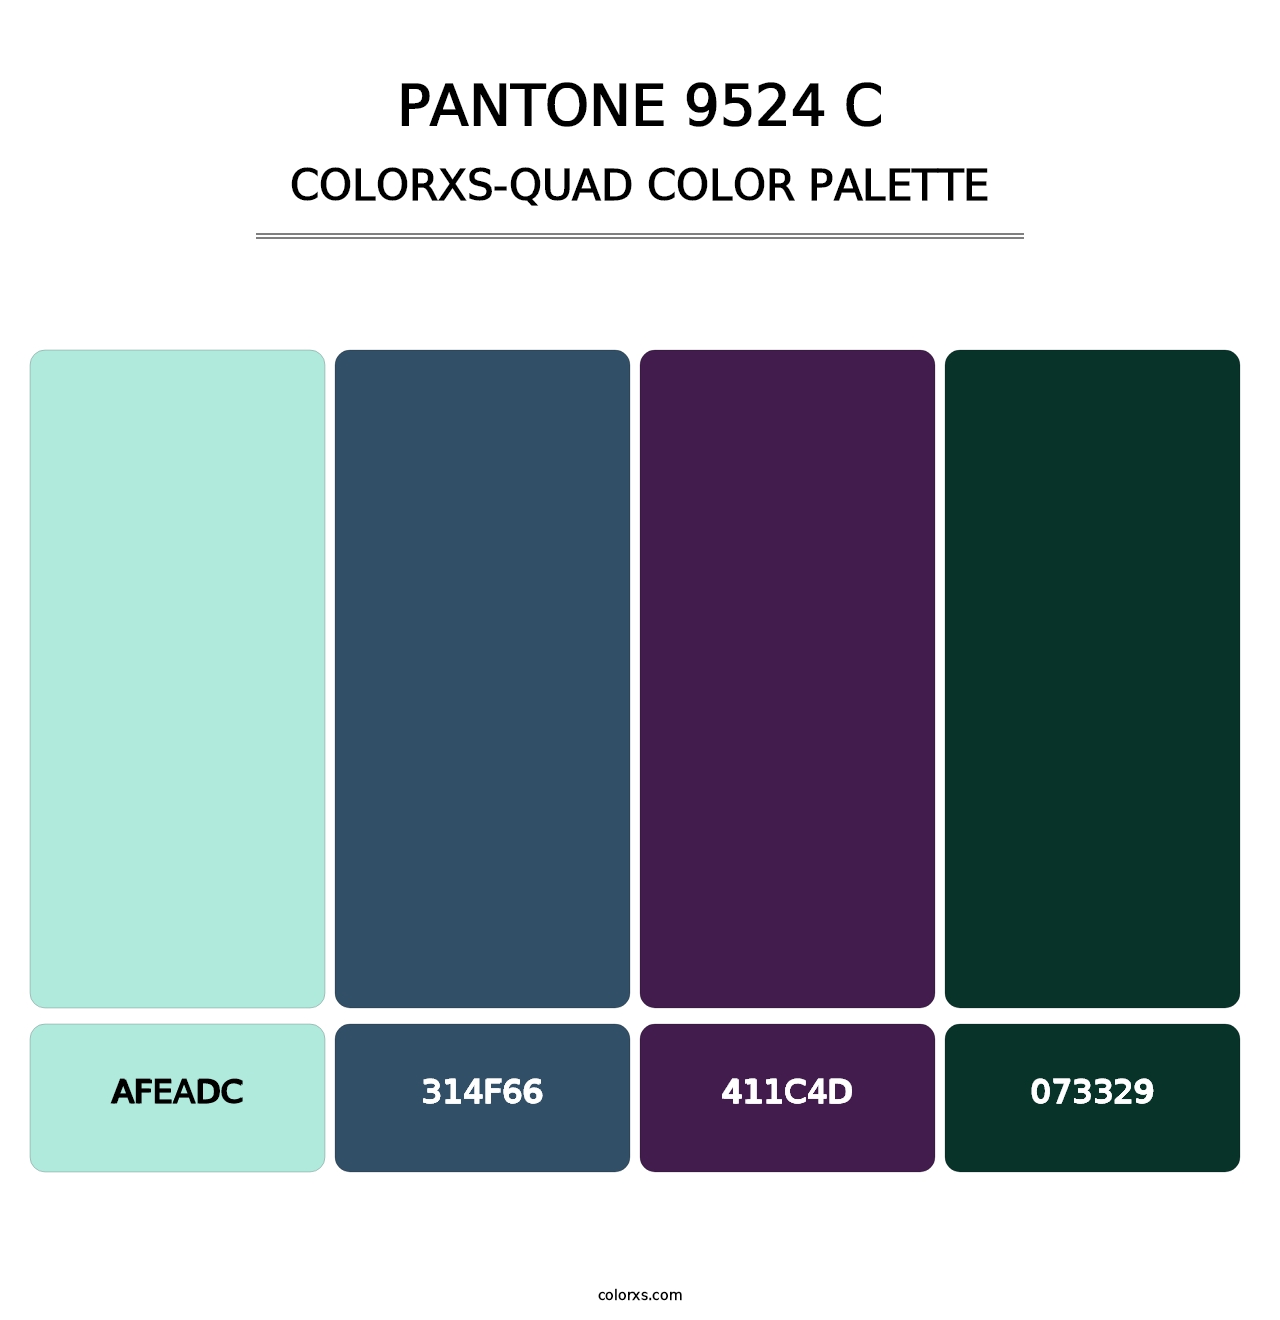 PANTONE 9524 C - Colorxs Quad Palette